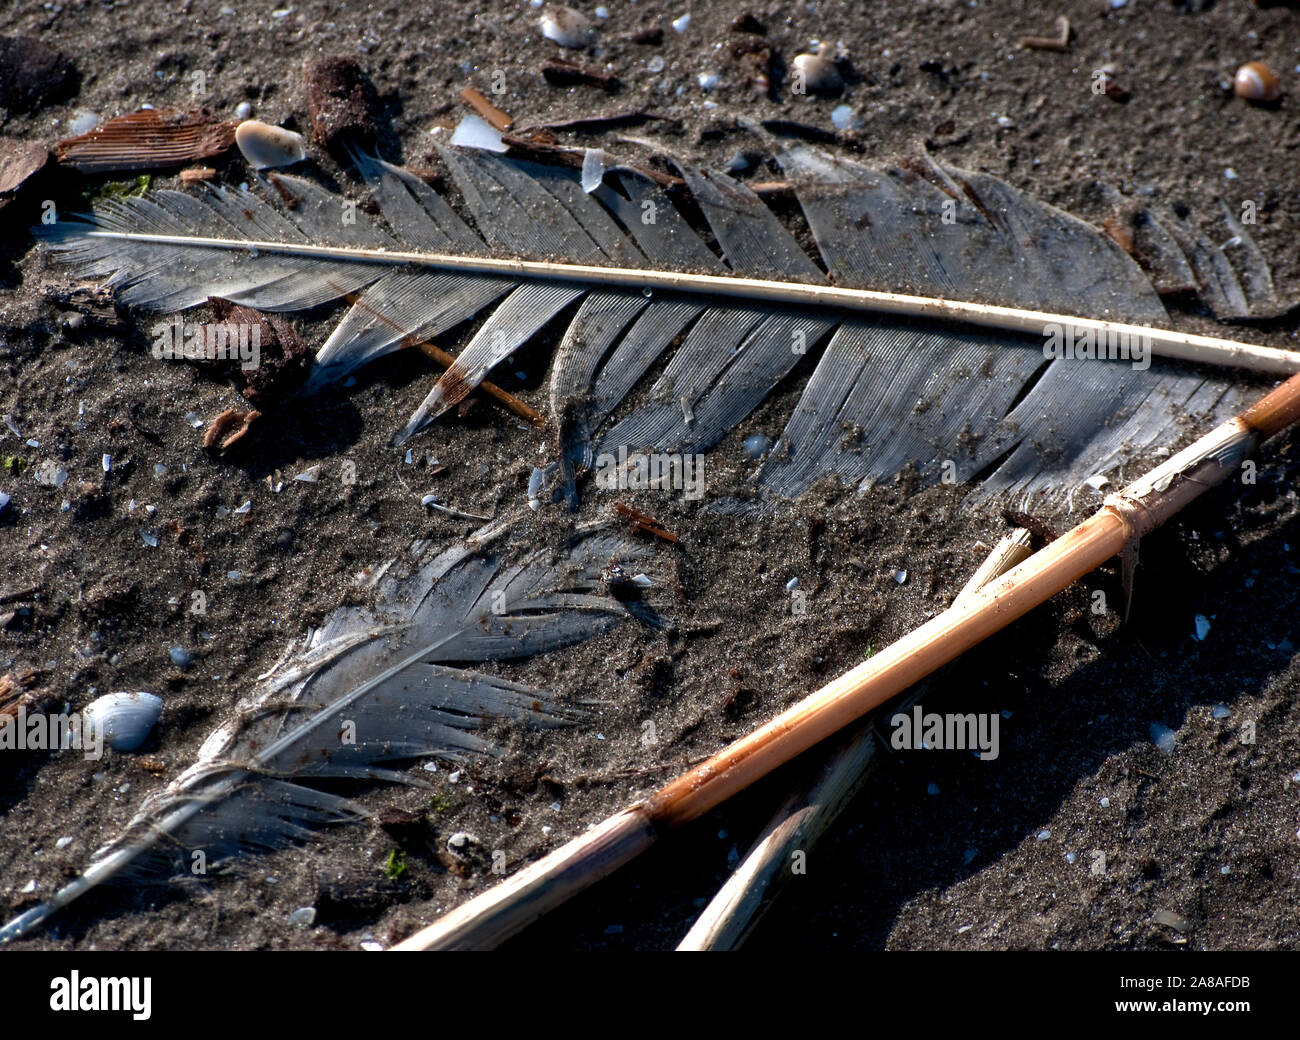 Le penne degli uccelli si trovano sulla spiaggia nel mezzo di altri detriti Marzo 6, 2011 in Grand Isle, Louisiana. L'isola fu pesantemente influenzato dalla BP fuoriuscite di olio. Foto Stock